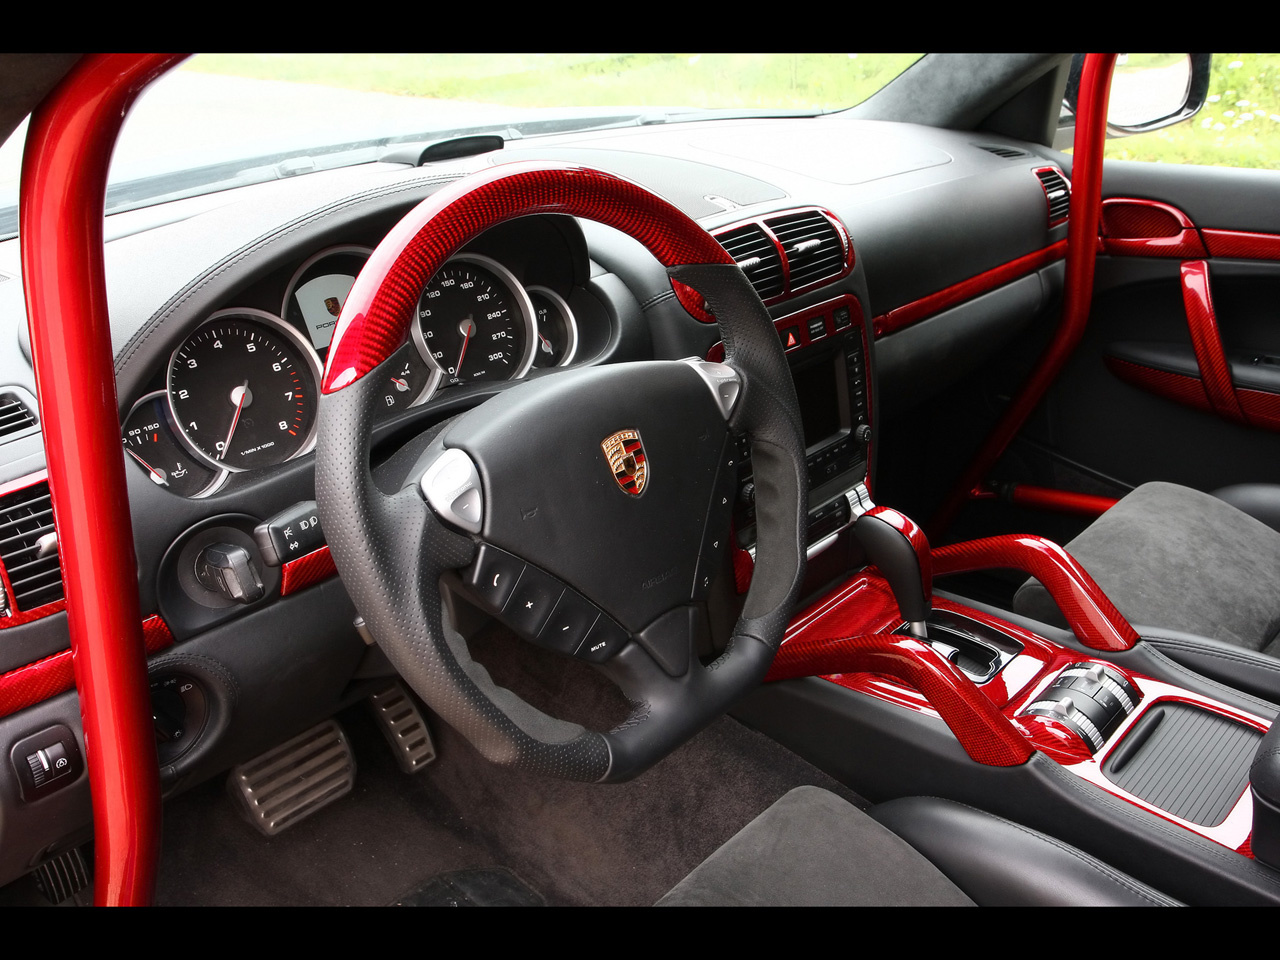 2010-Enco-Gladiator-700-Porsche-Cayenne-GT-Biturbo-Dashboard-128